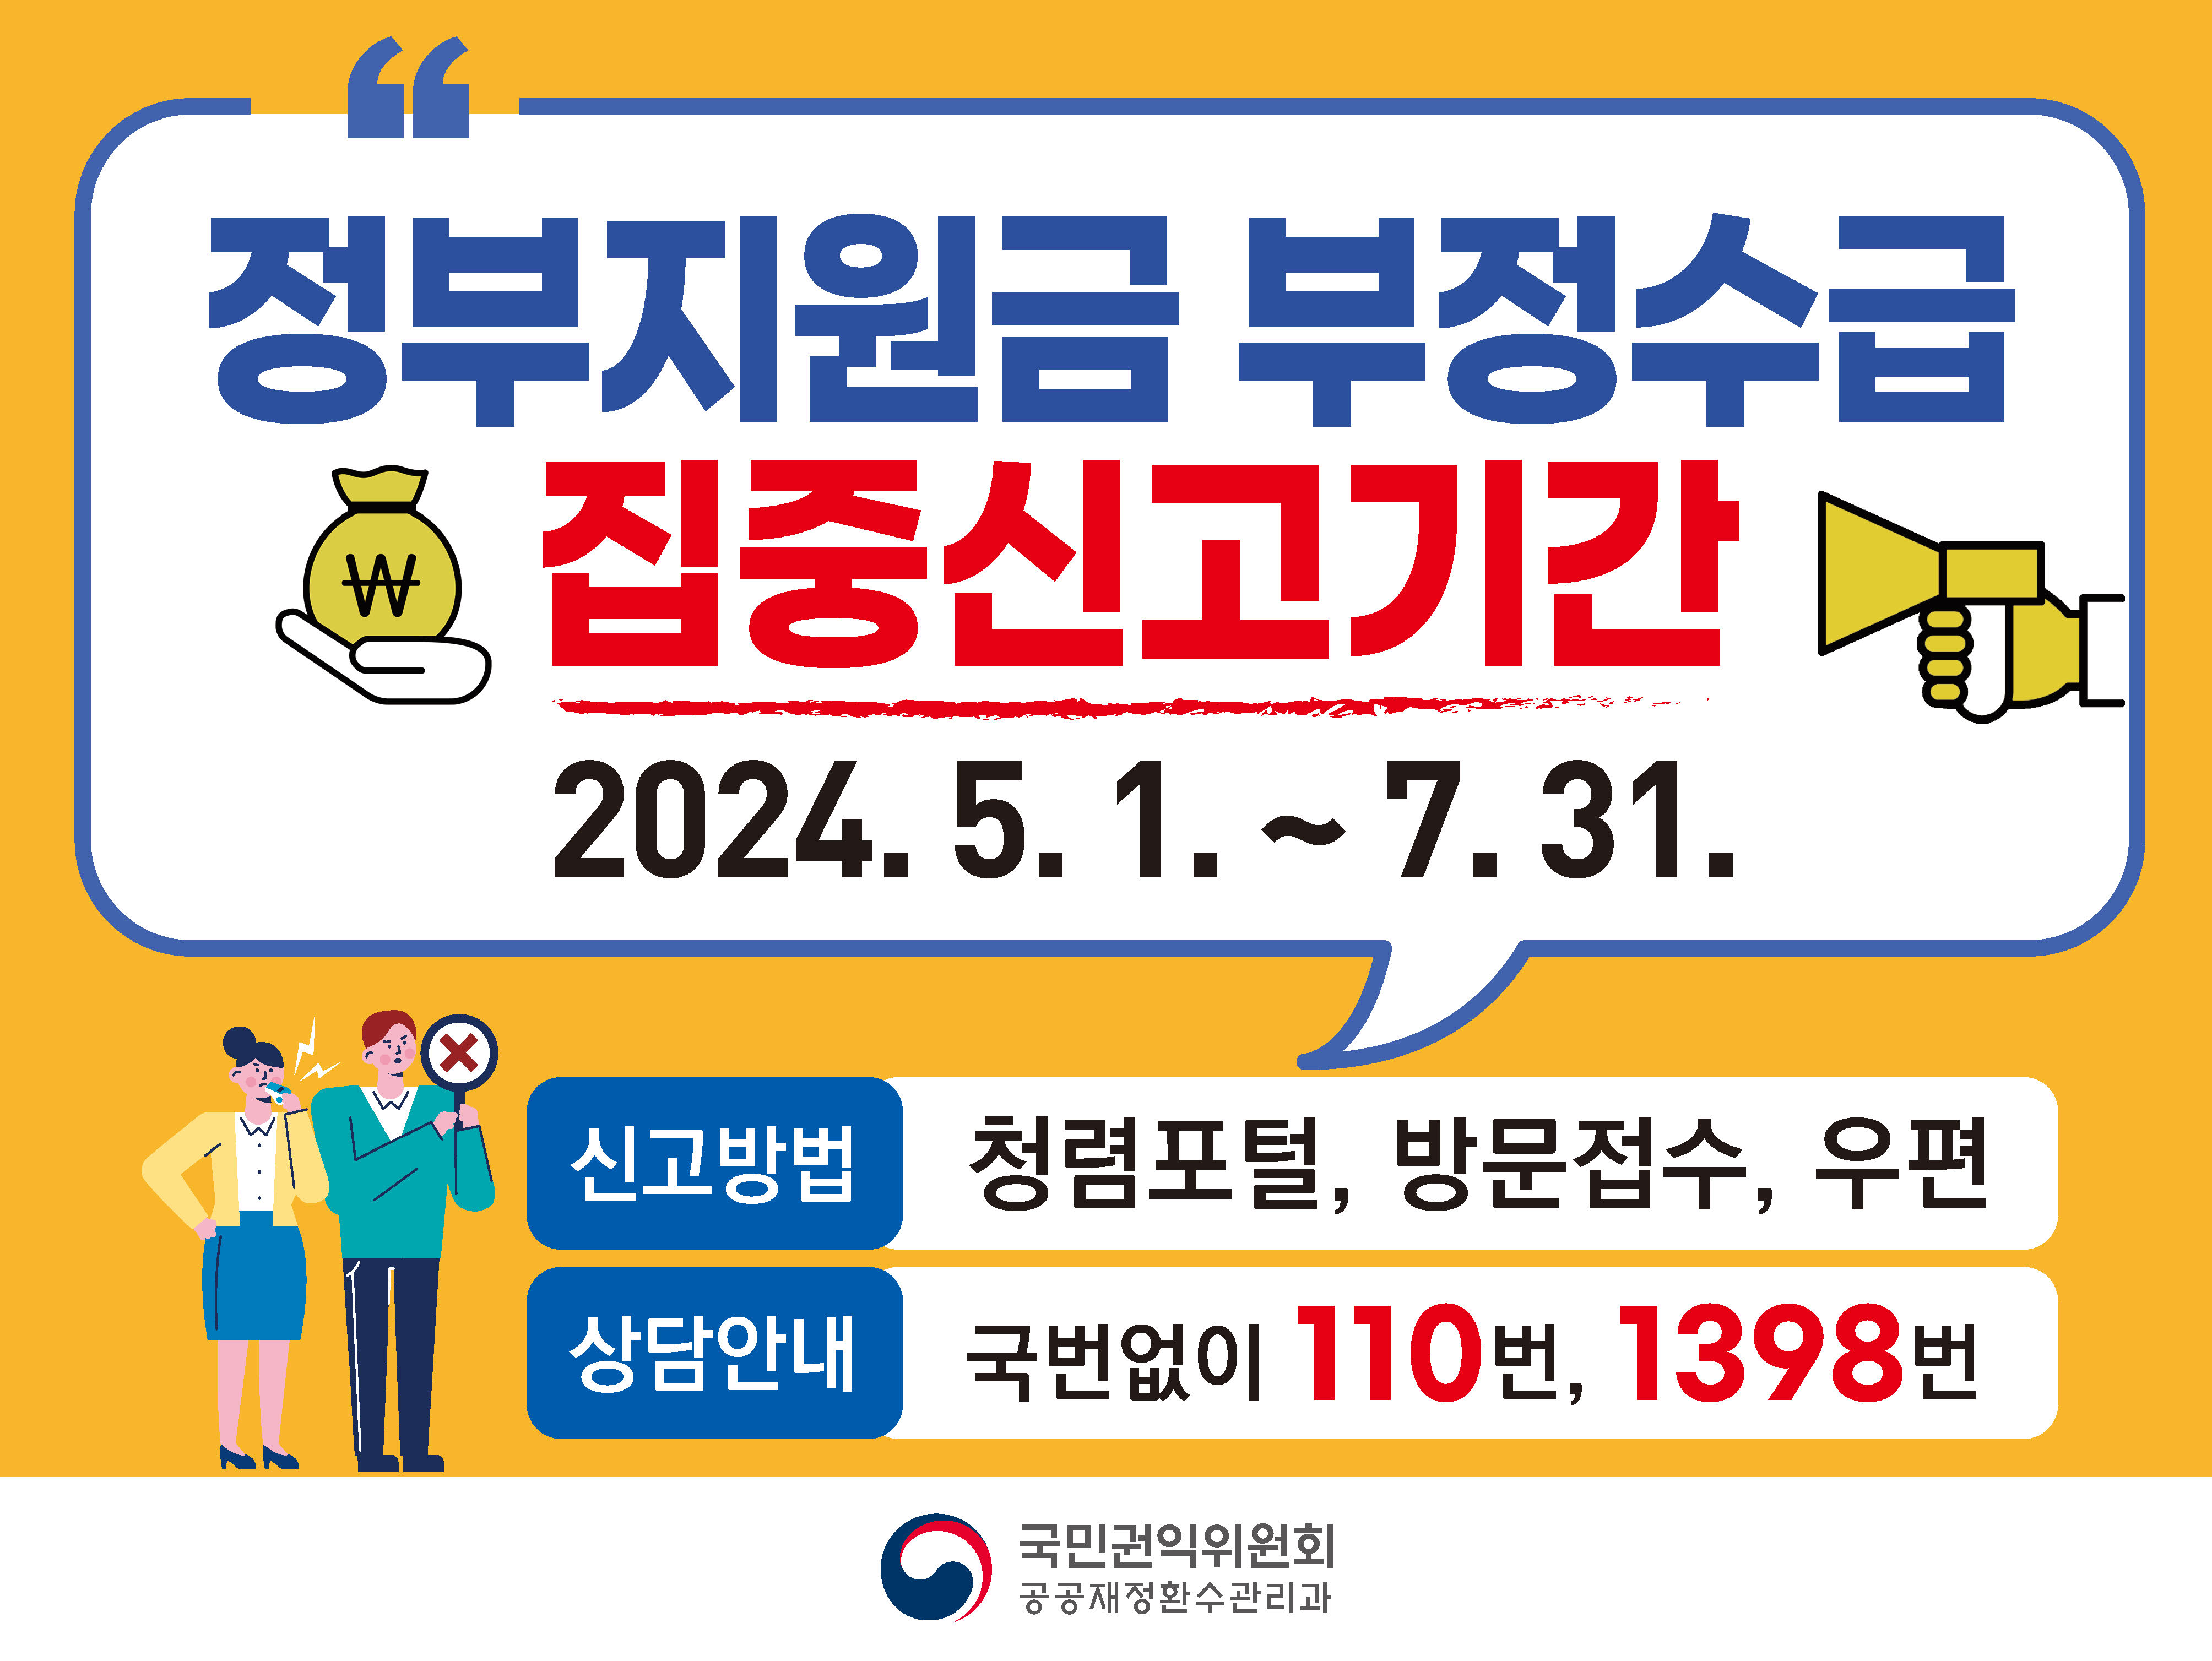 정부지원금 부정수급 집중신고기간
2024.5.1.~7.31.